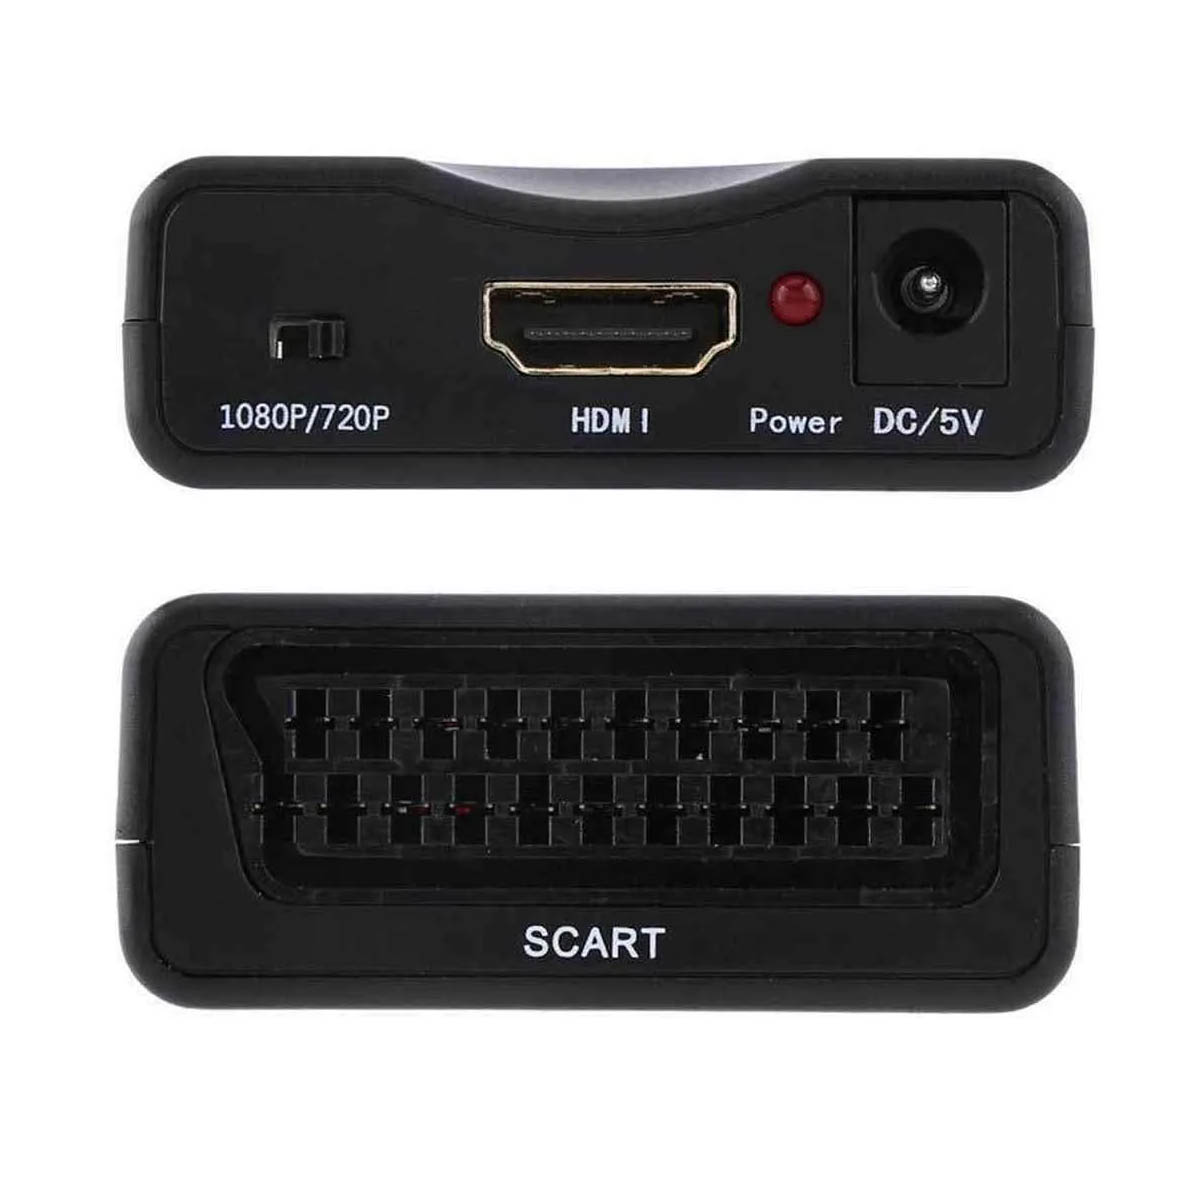 Переходник, адаптер, конвертер H69, SСART на HDMI, дополнительное питание 5V, цвет черный